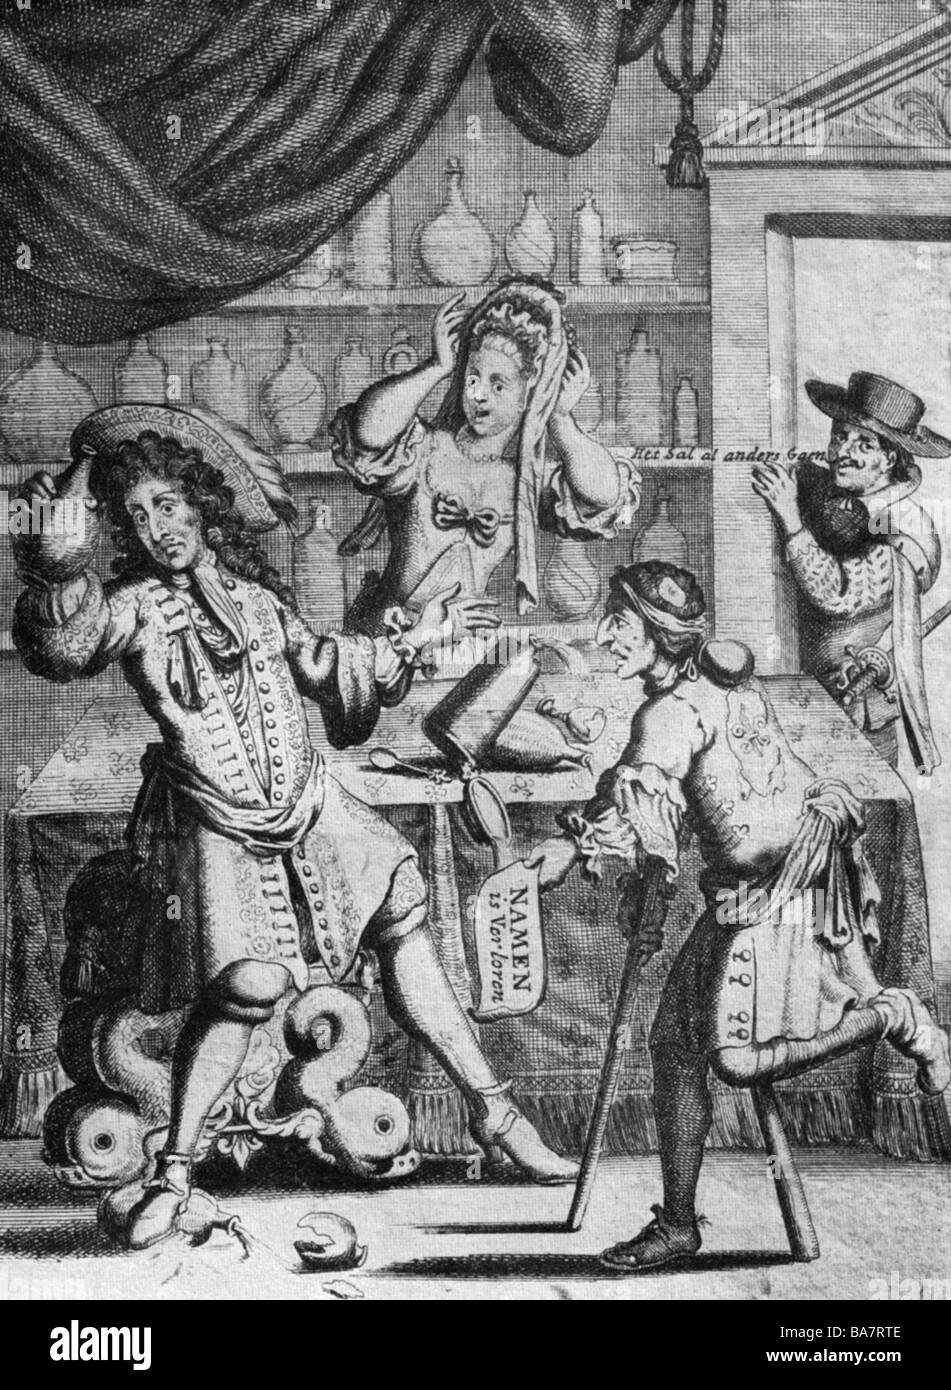 Louis XIV, 5.9.1638 - 1.9.1715, roi de France 1643 - 1715, pleine longueur, caricature "Louis le Gram", sonnet néerlandais sur la perte de Namur, 1695, Banque D'Images